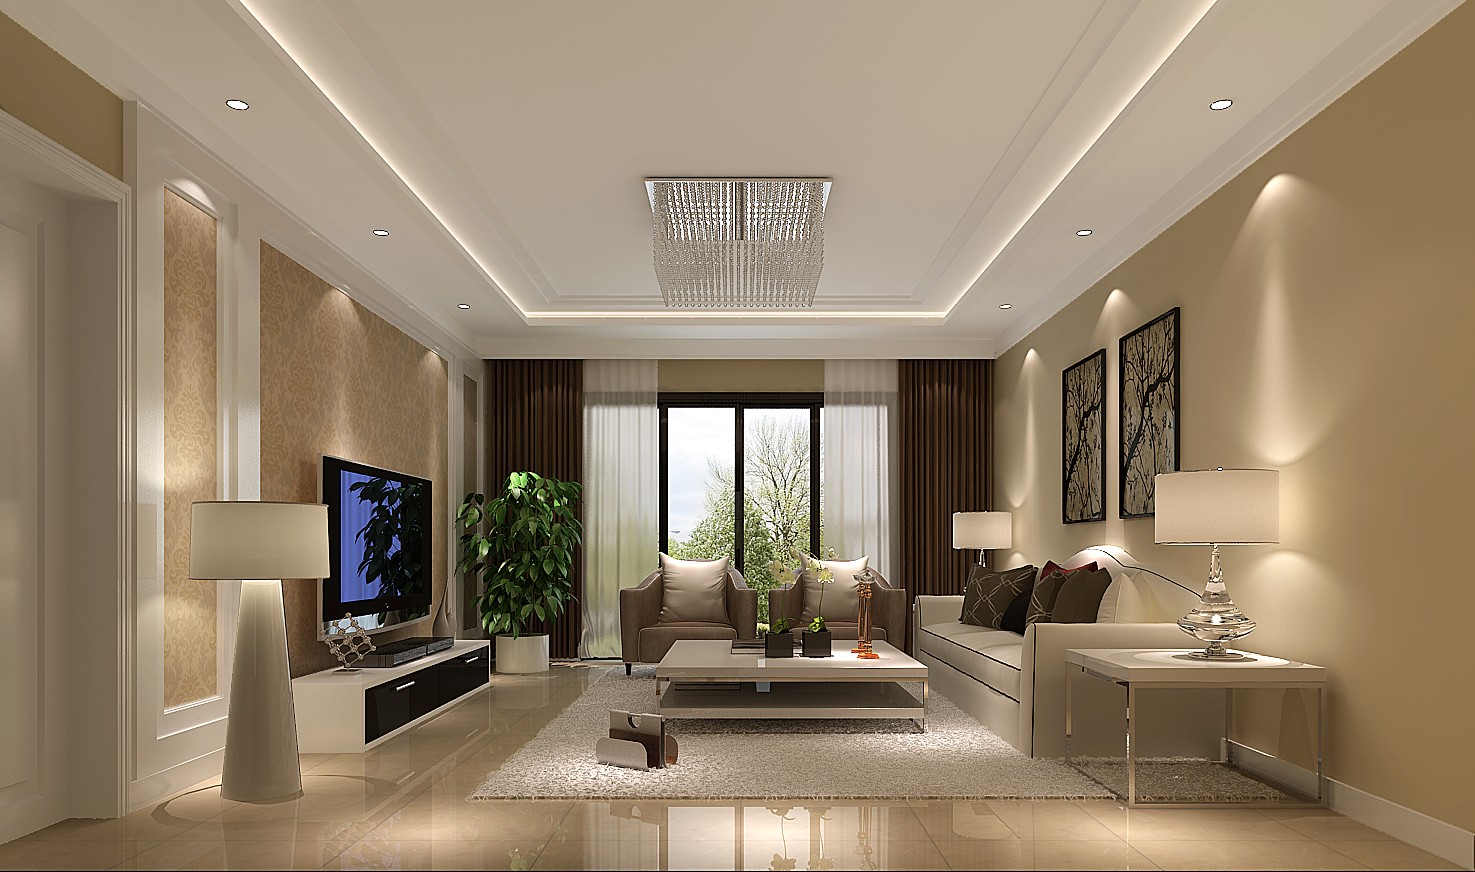 高度国际 上林世家 现代简约 公寓 客厅图片来自高度国际在上林世家-重装饰装修的分享